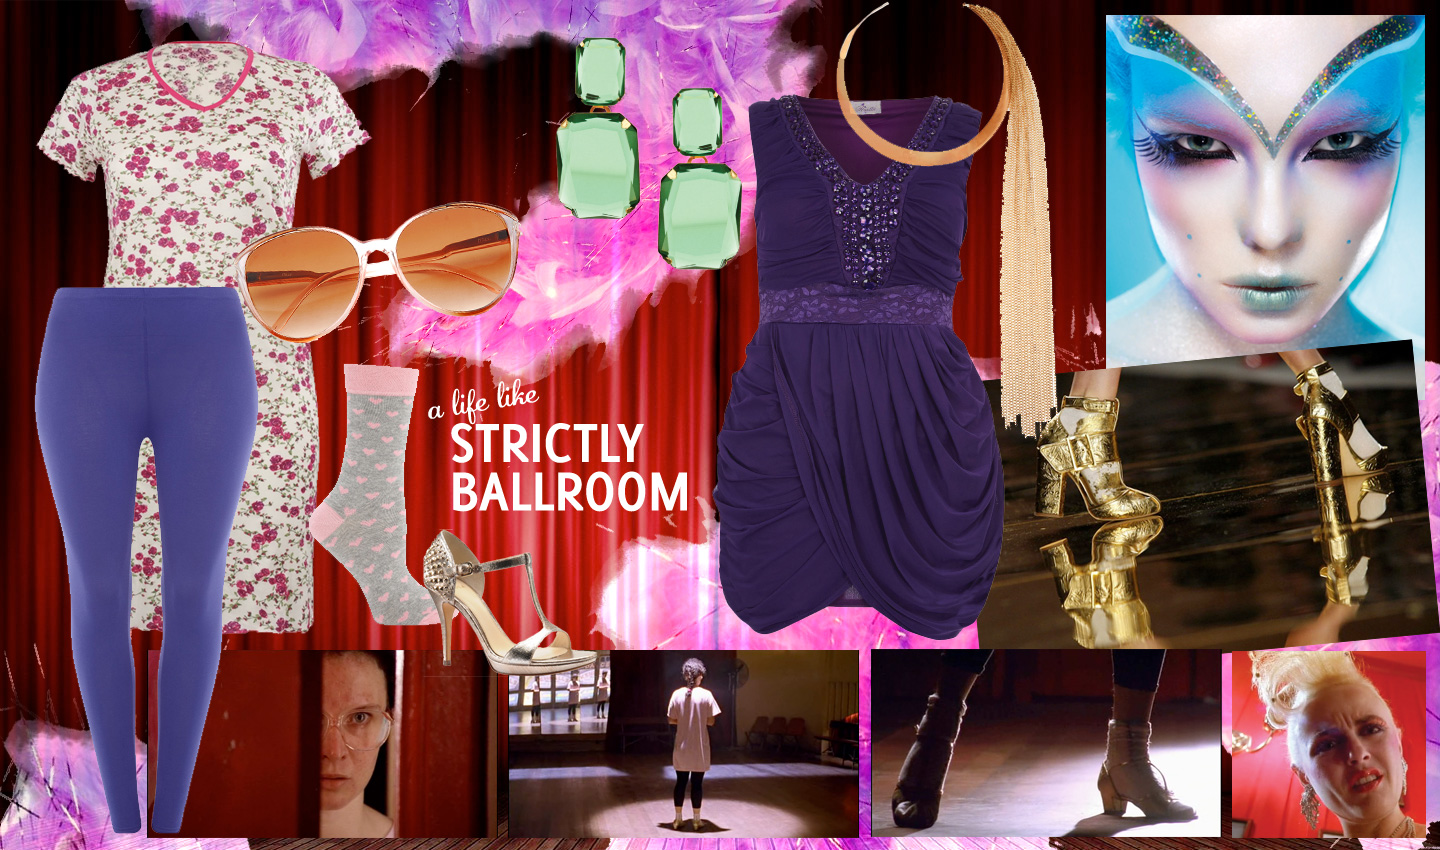 A life like Strictly Ballroom